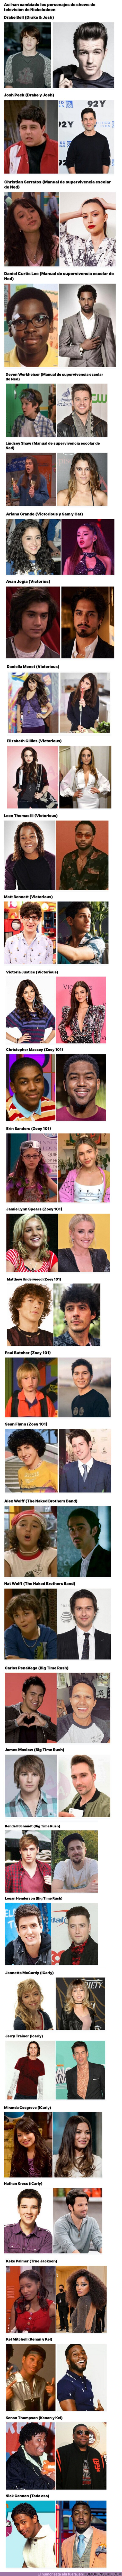 126712 - GALERÍA: Así han cambiado los personajes de shows de televisión de Nickelodeon